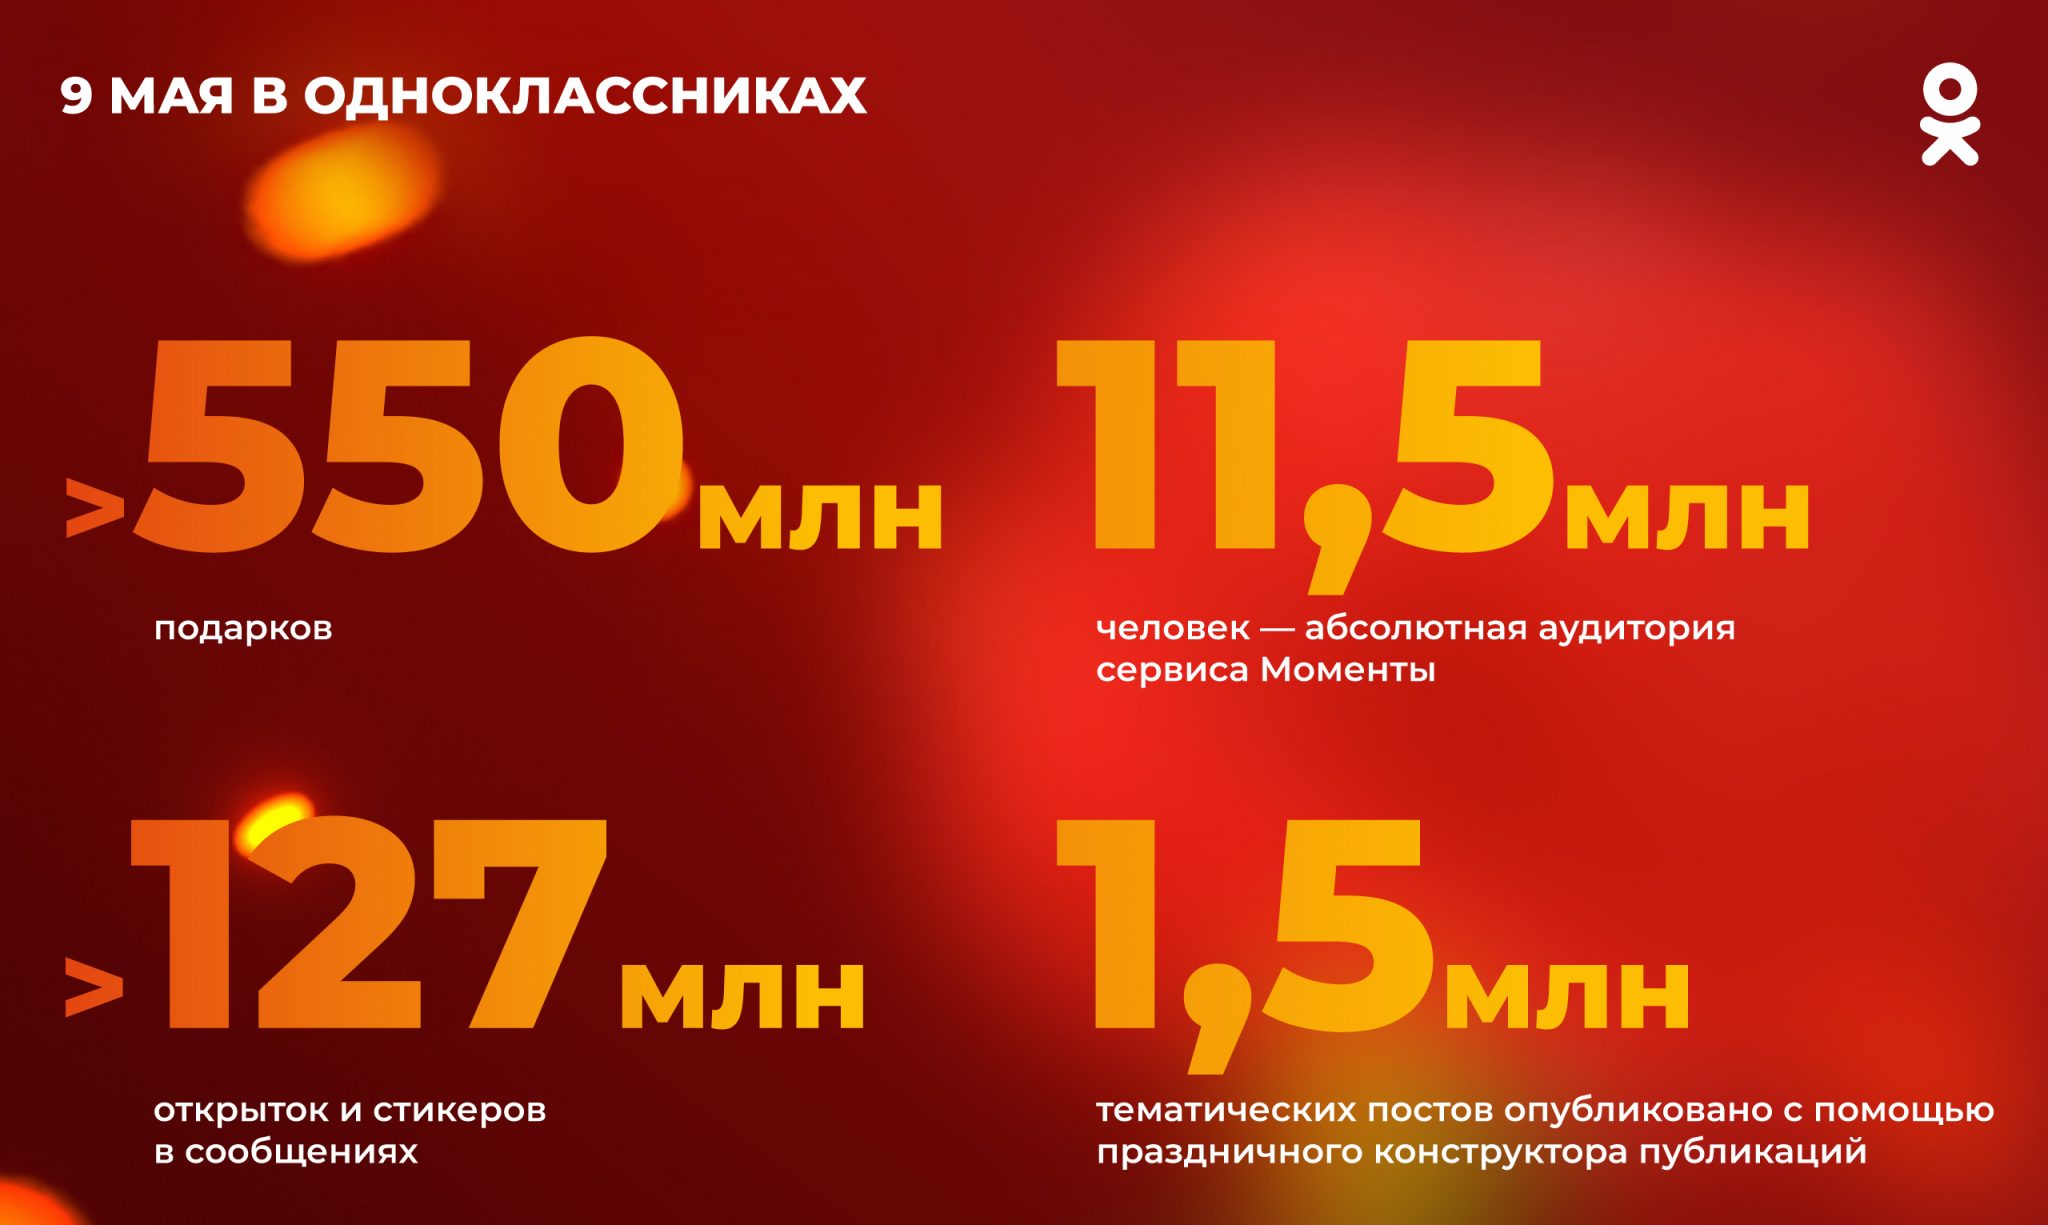 9 мая Одноклассники зарегистрировали двукратный рост просмотров в «Моментах»